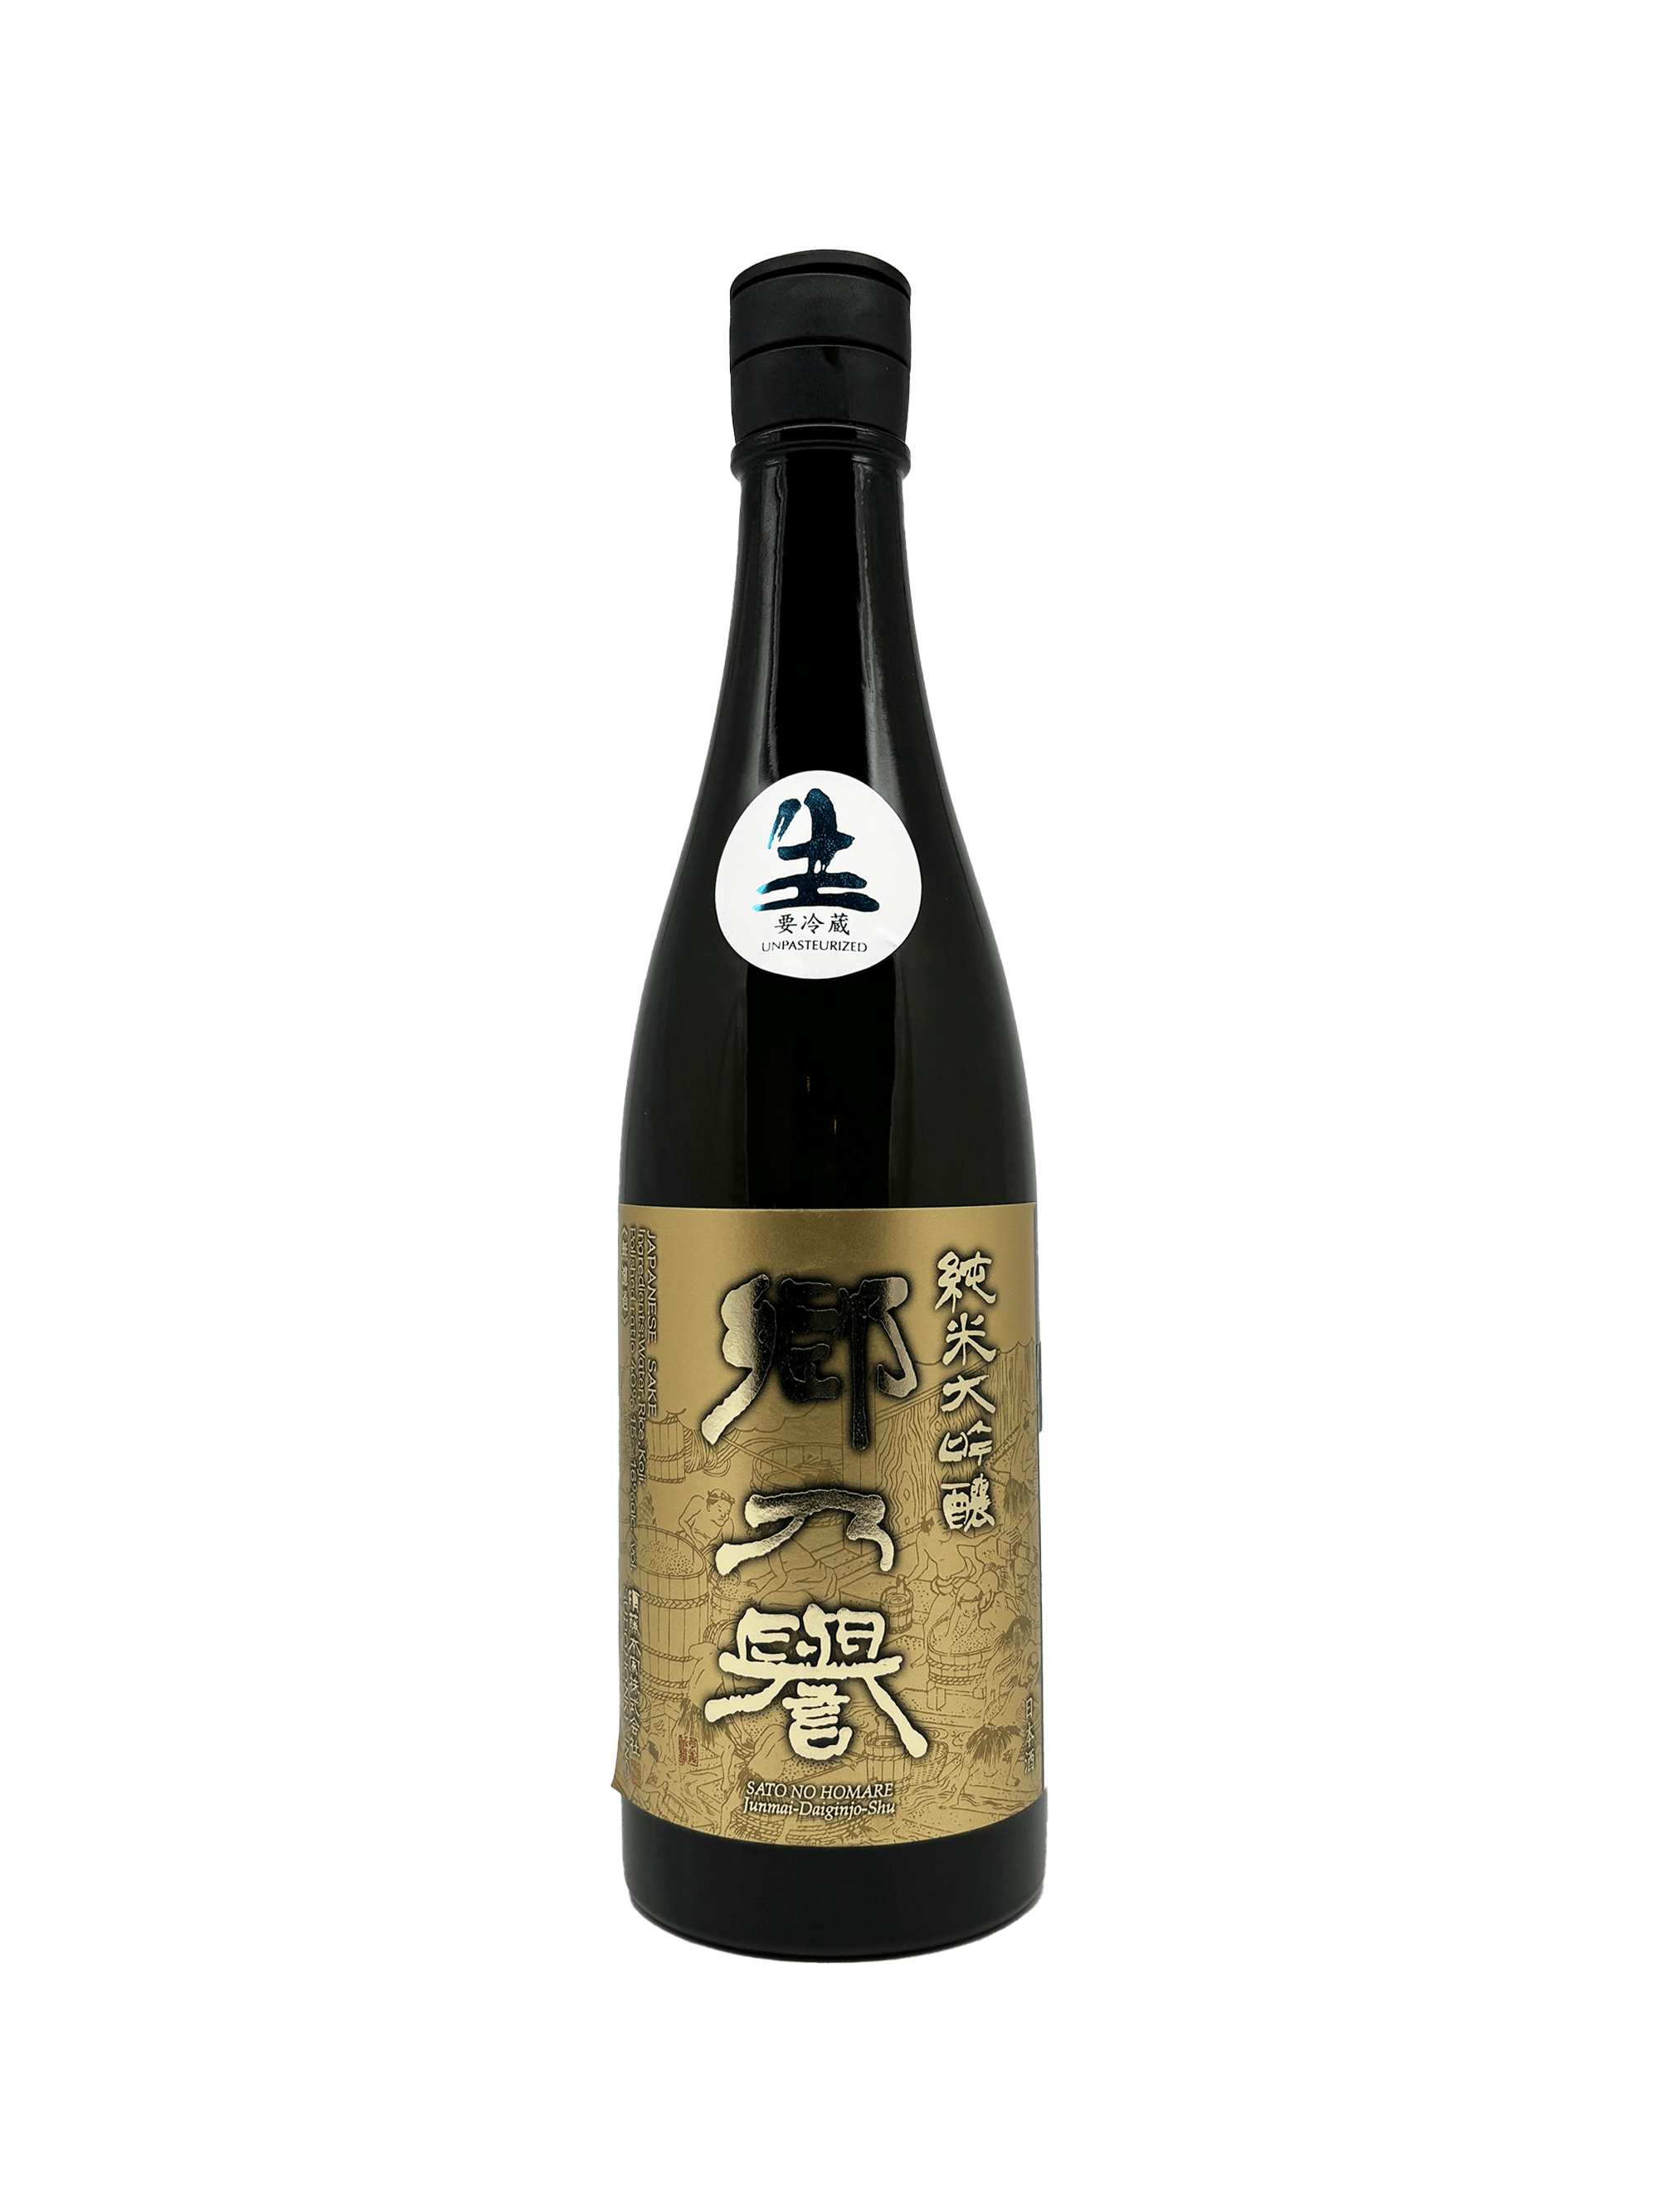 Sato no Homare Daiginjō Black Label